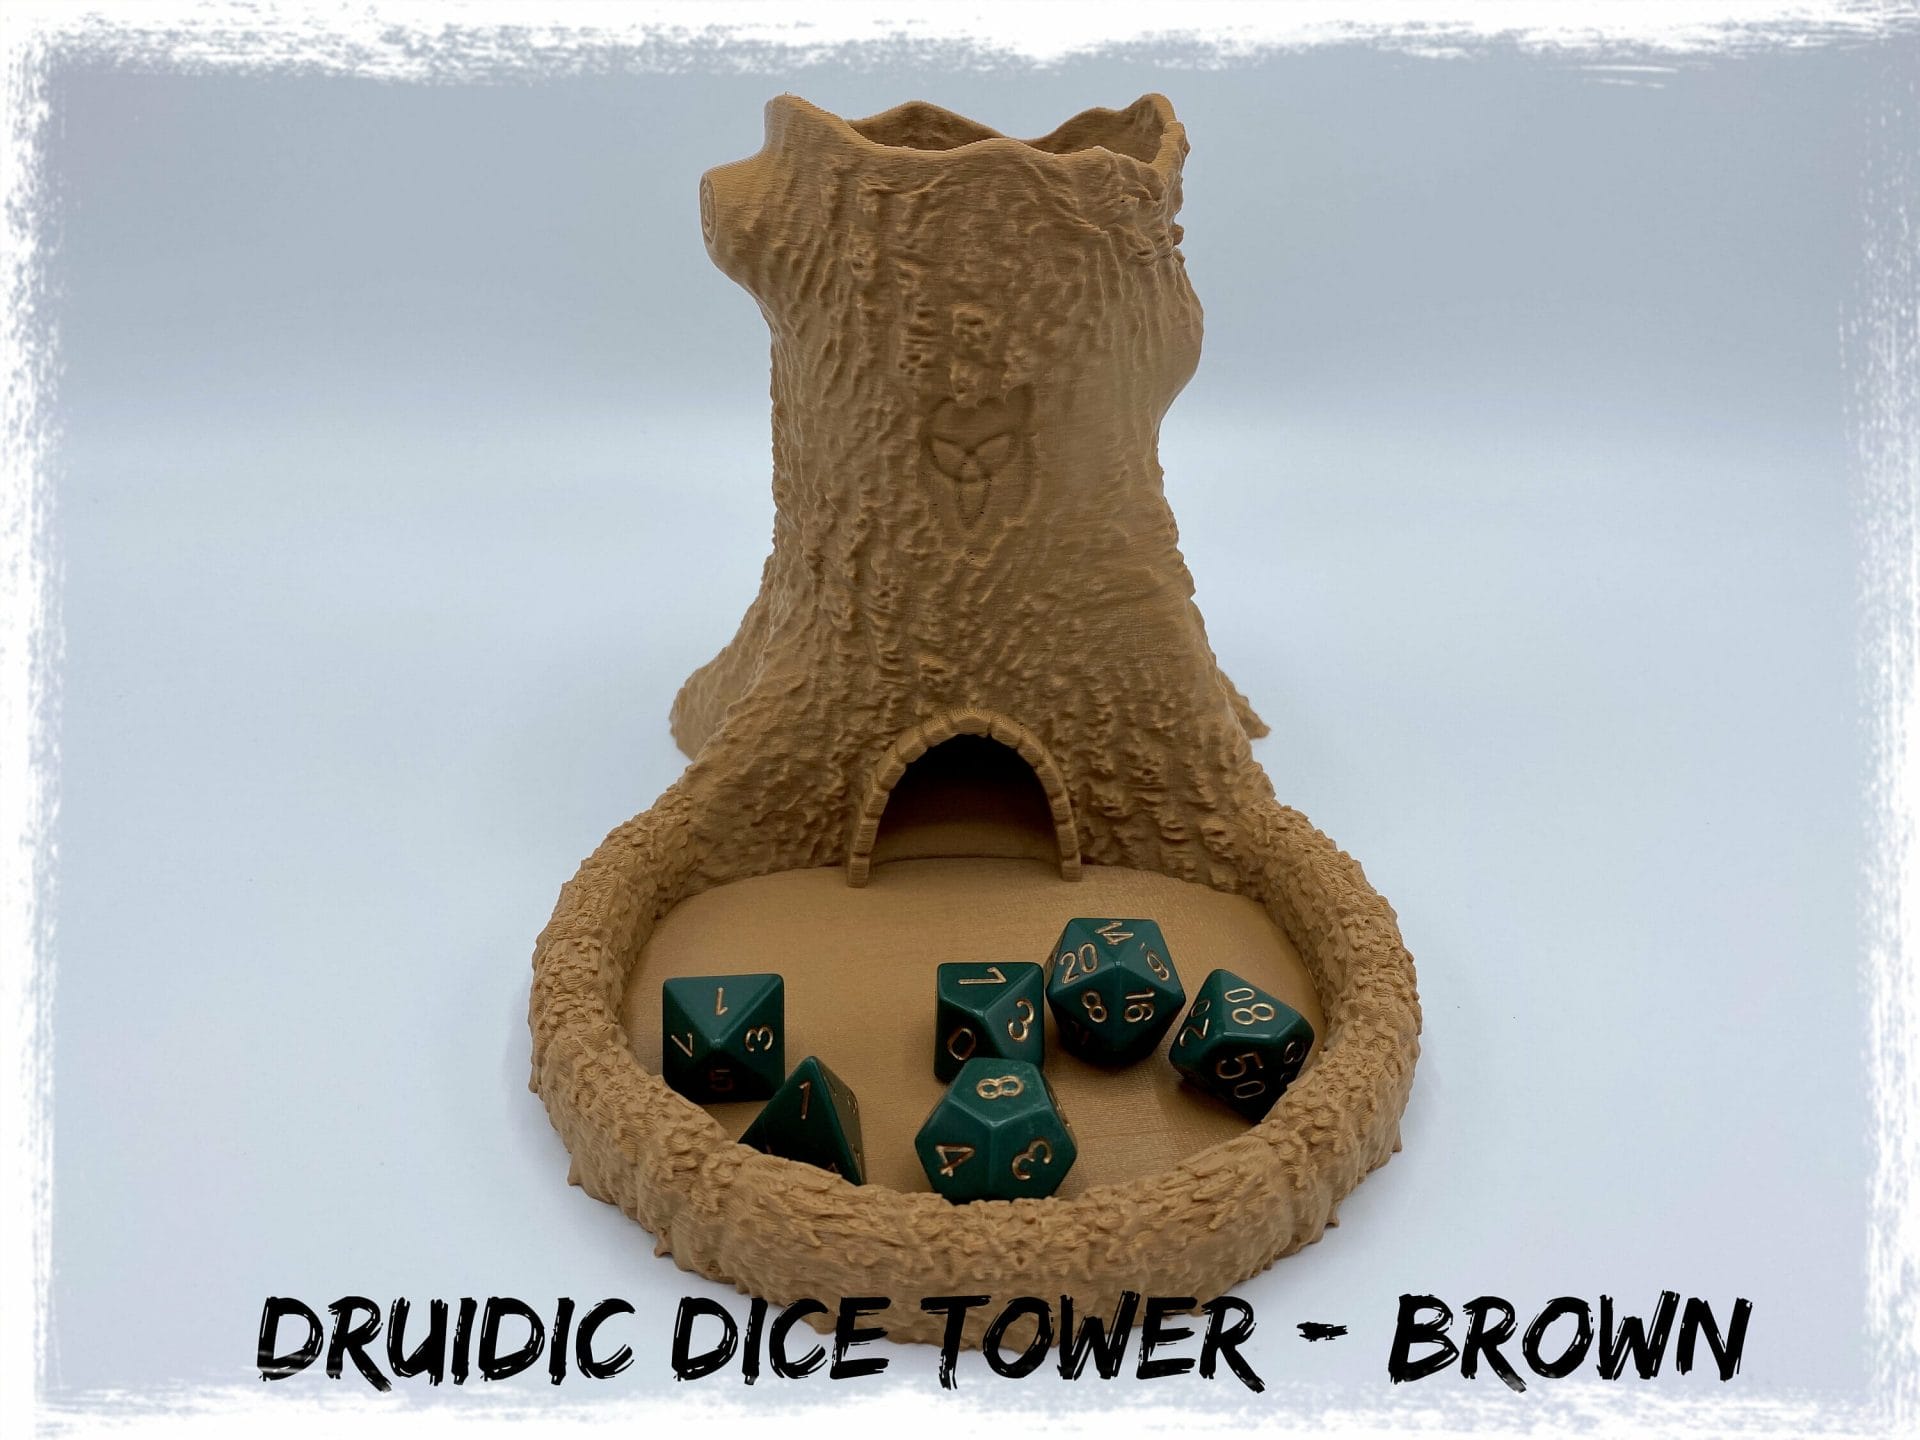 Druidic dice tower